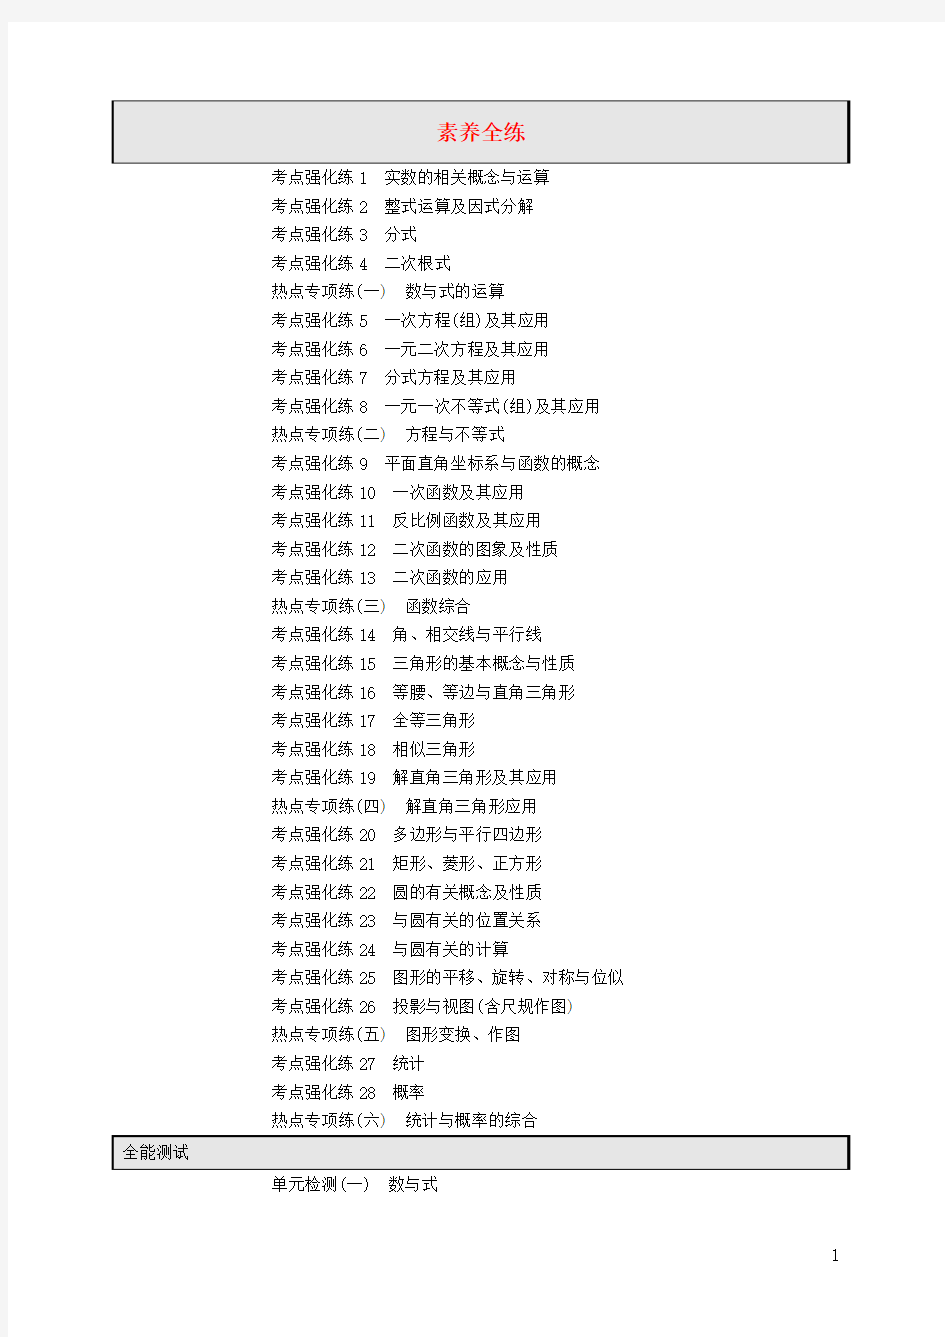 (课标通用)安徽省2019年中考数学总复习目录素材